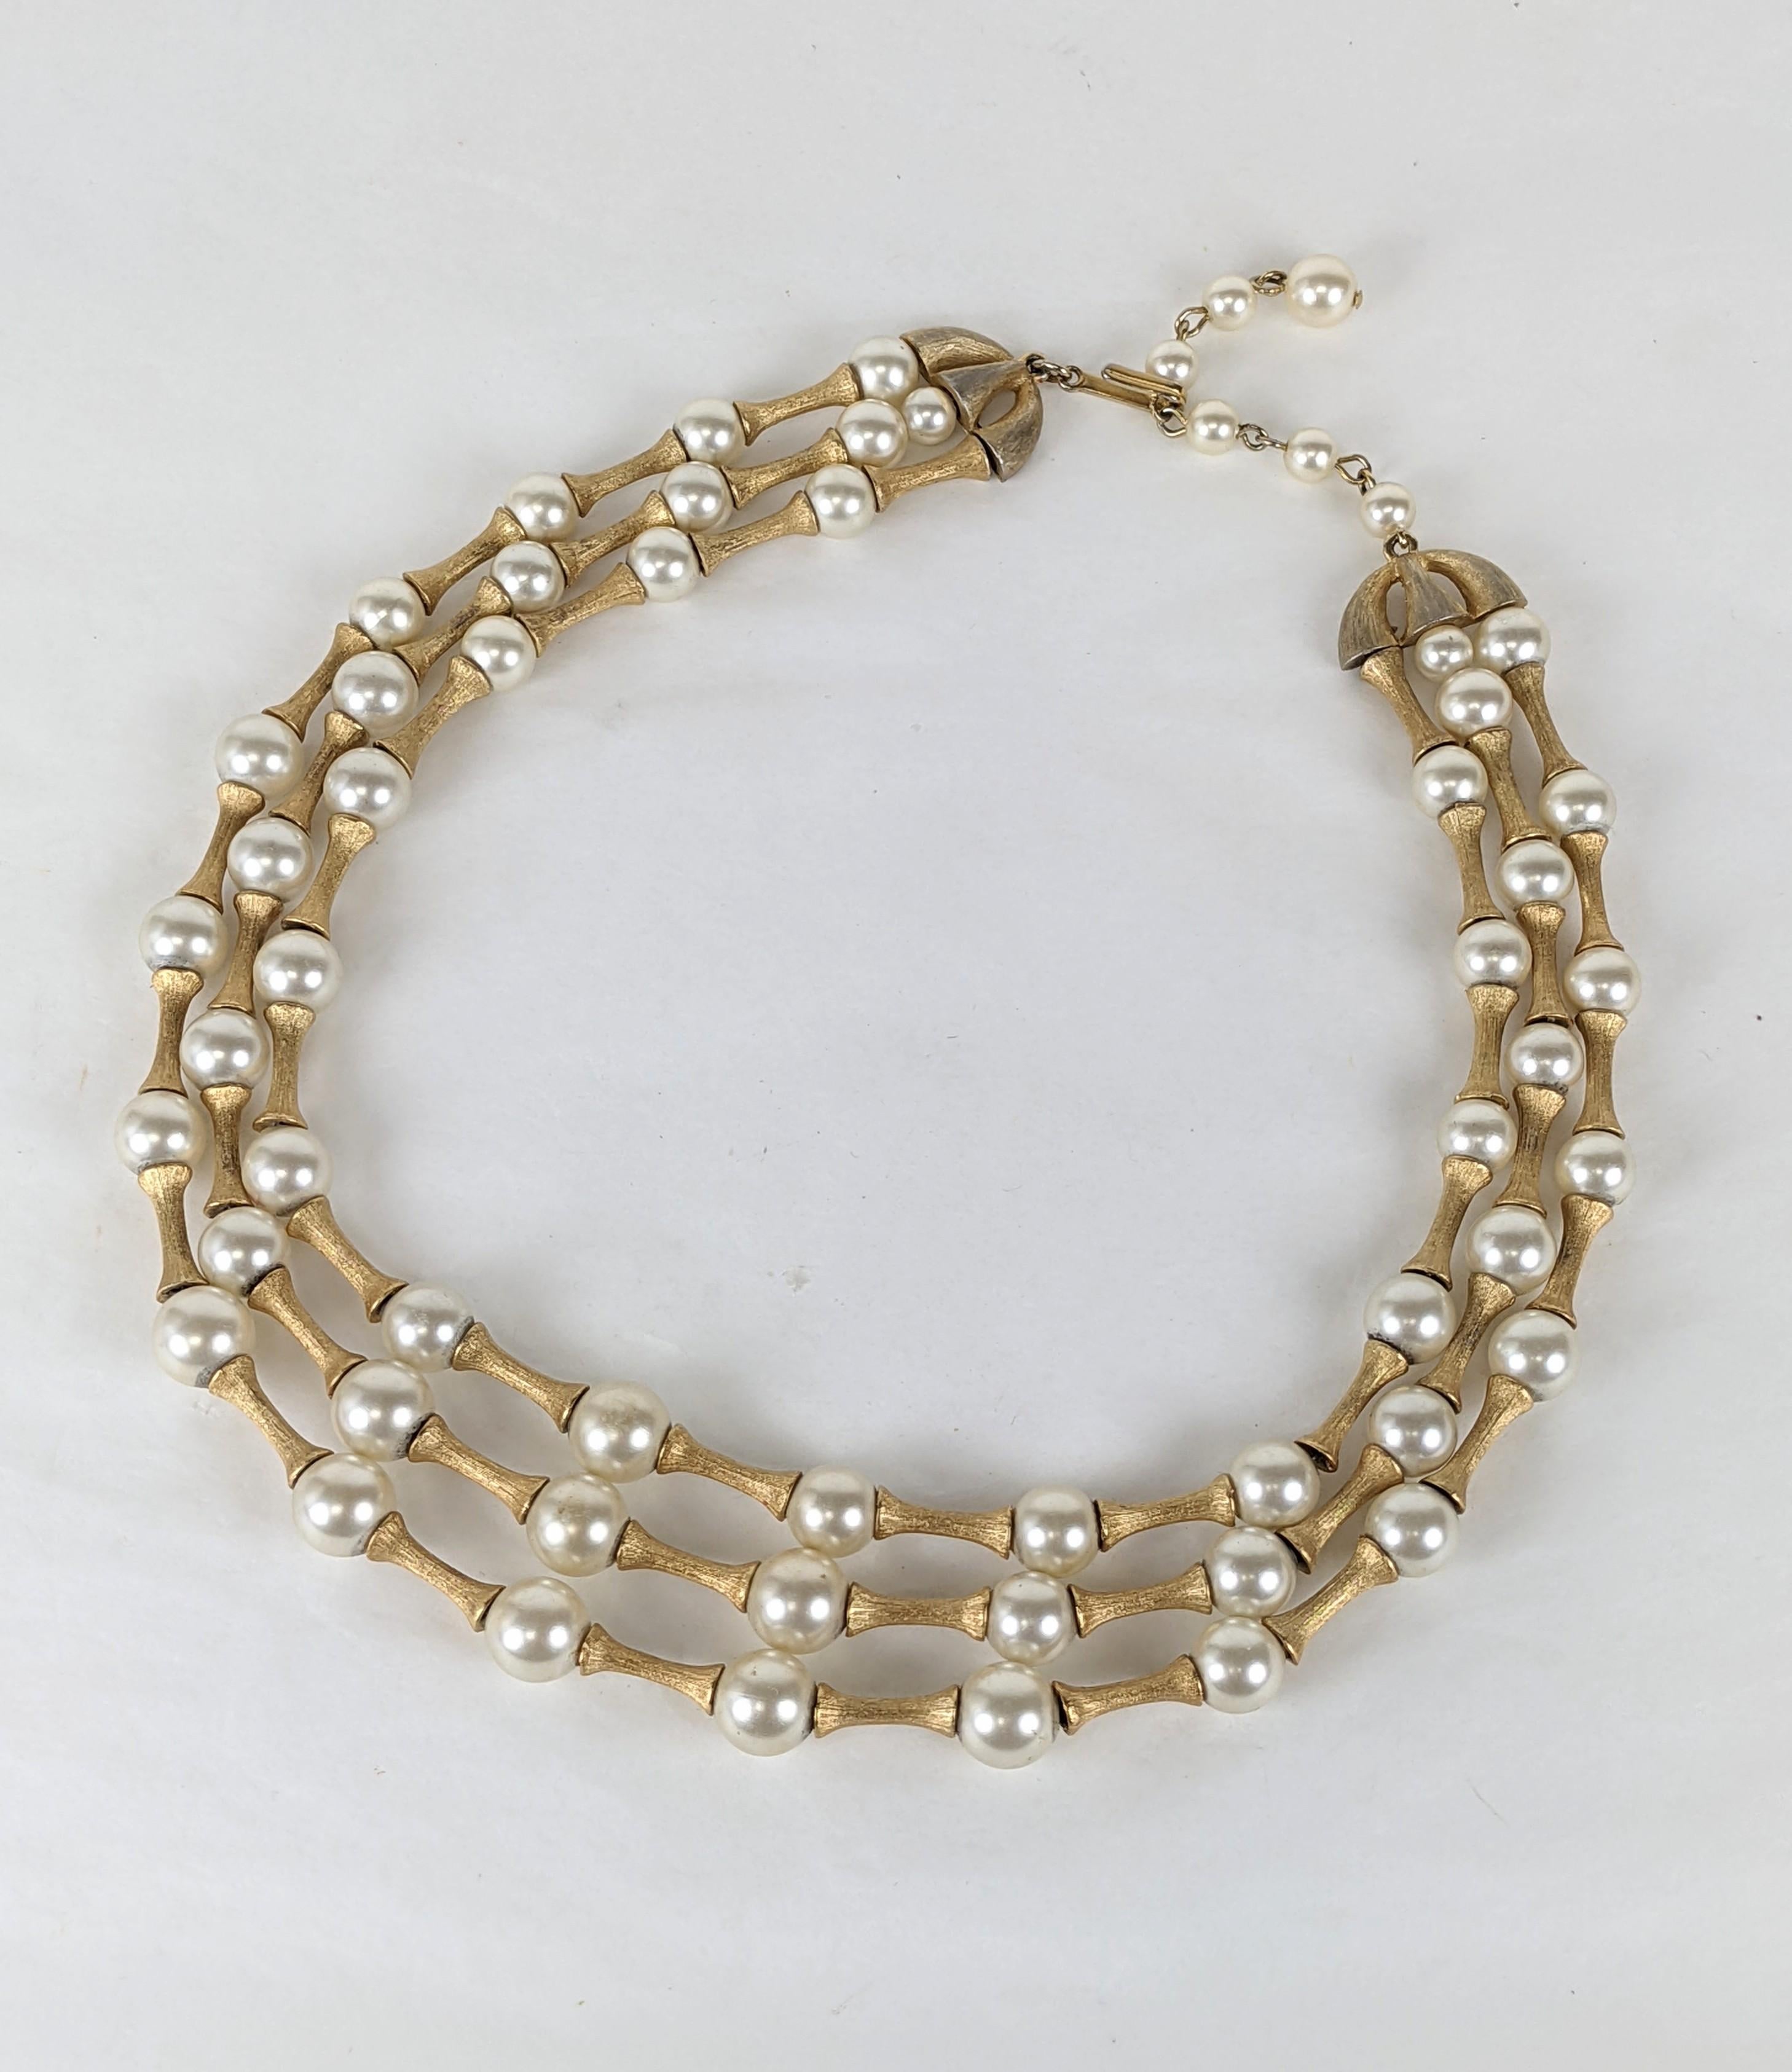 Joli collier moderniste à perles et agrafes de Trifari datant des années 1960. 3 rangs gradués de fausses perles avec des entretoises Florentine entre les deux.  États-Unis d'Amérique, années 1960. 
Réglable de 14,5